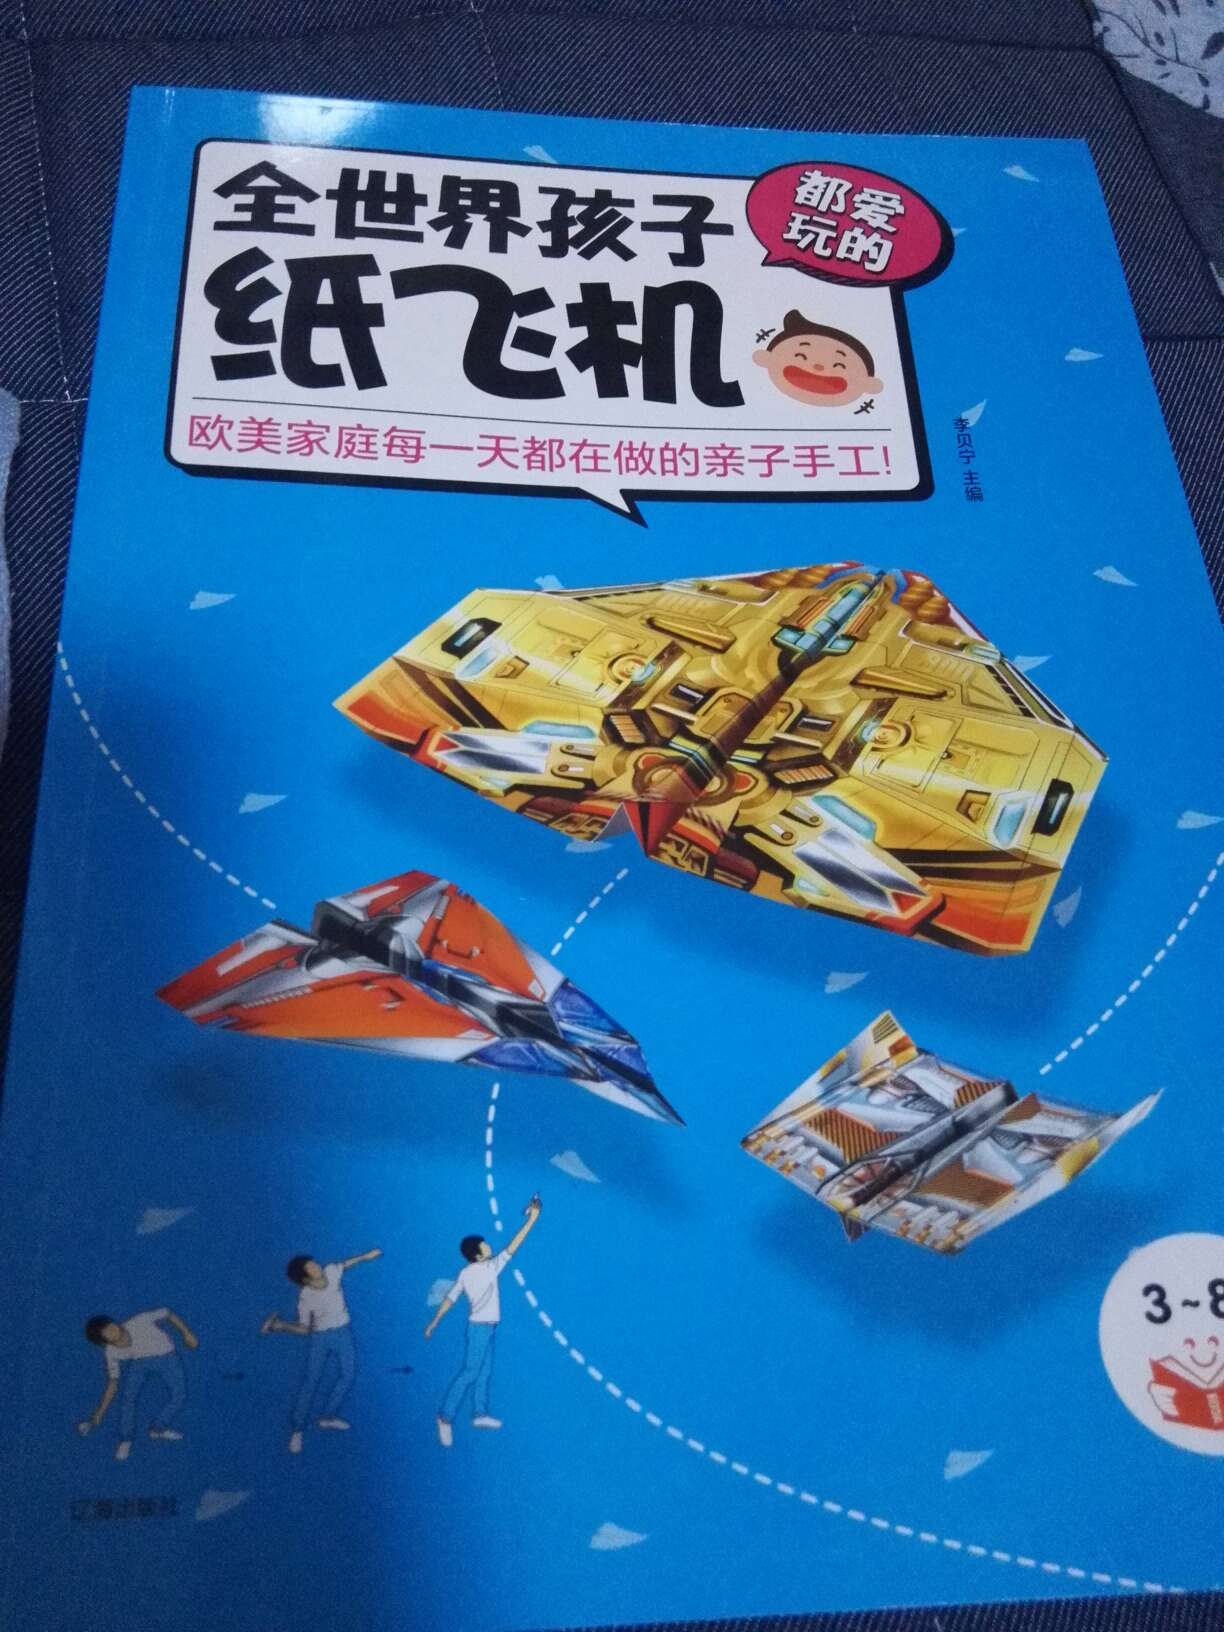 很酷很炫的一套纸飞机，家庭亲子游戏的很好选择！不错哦?